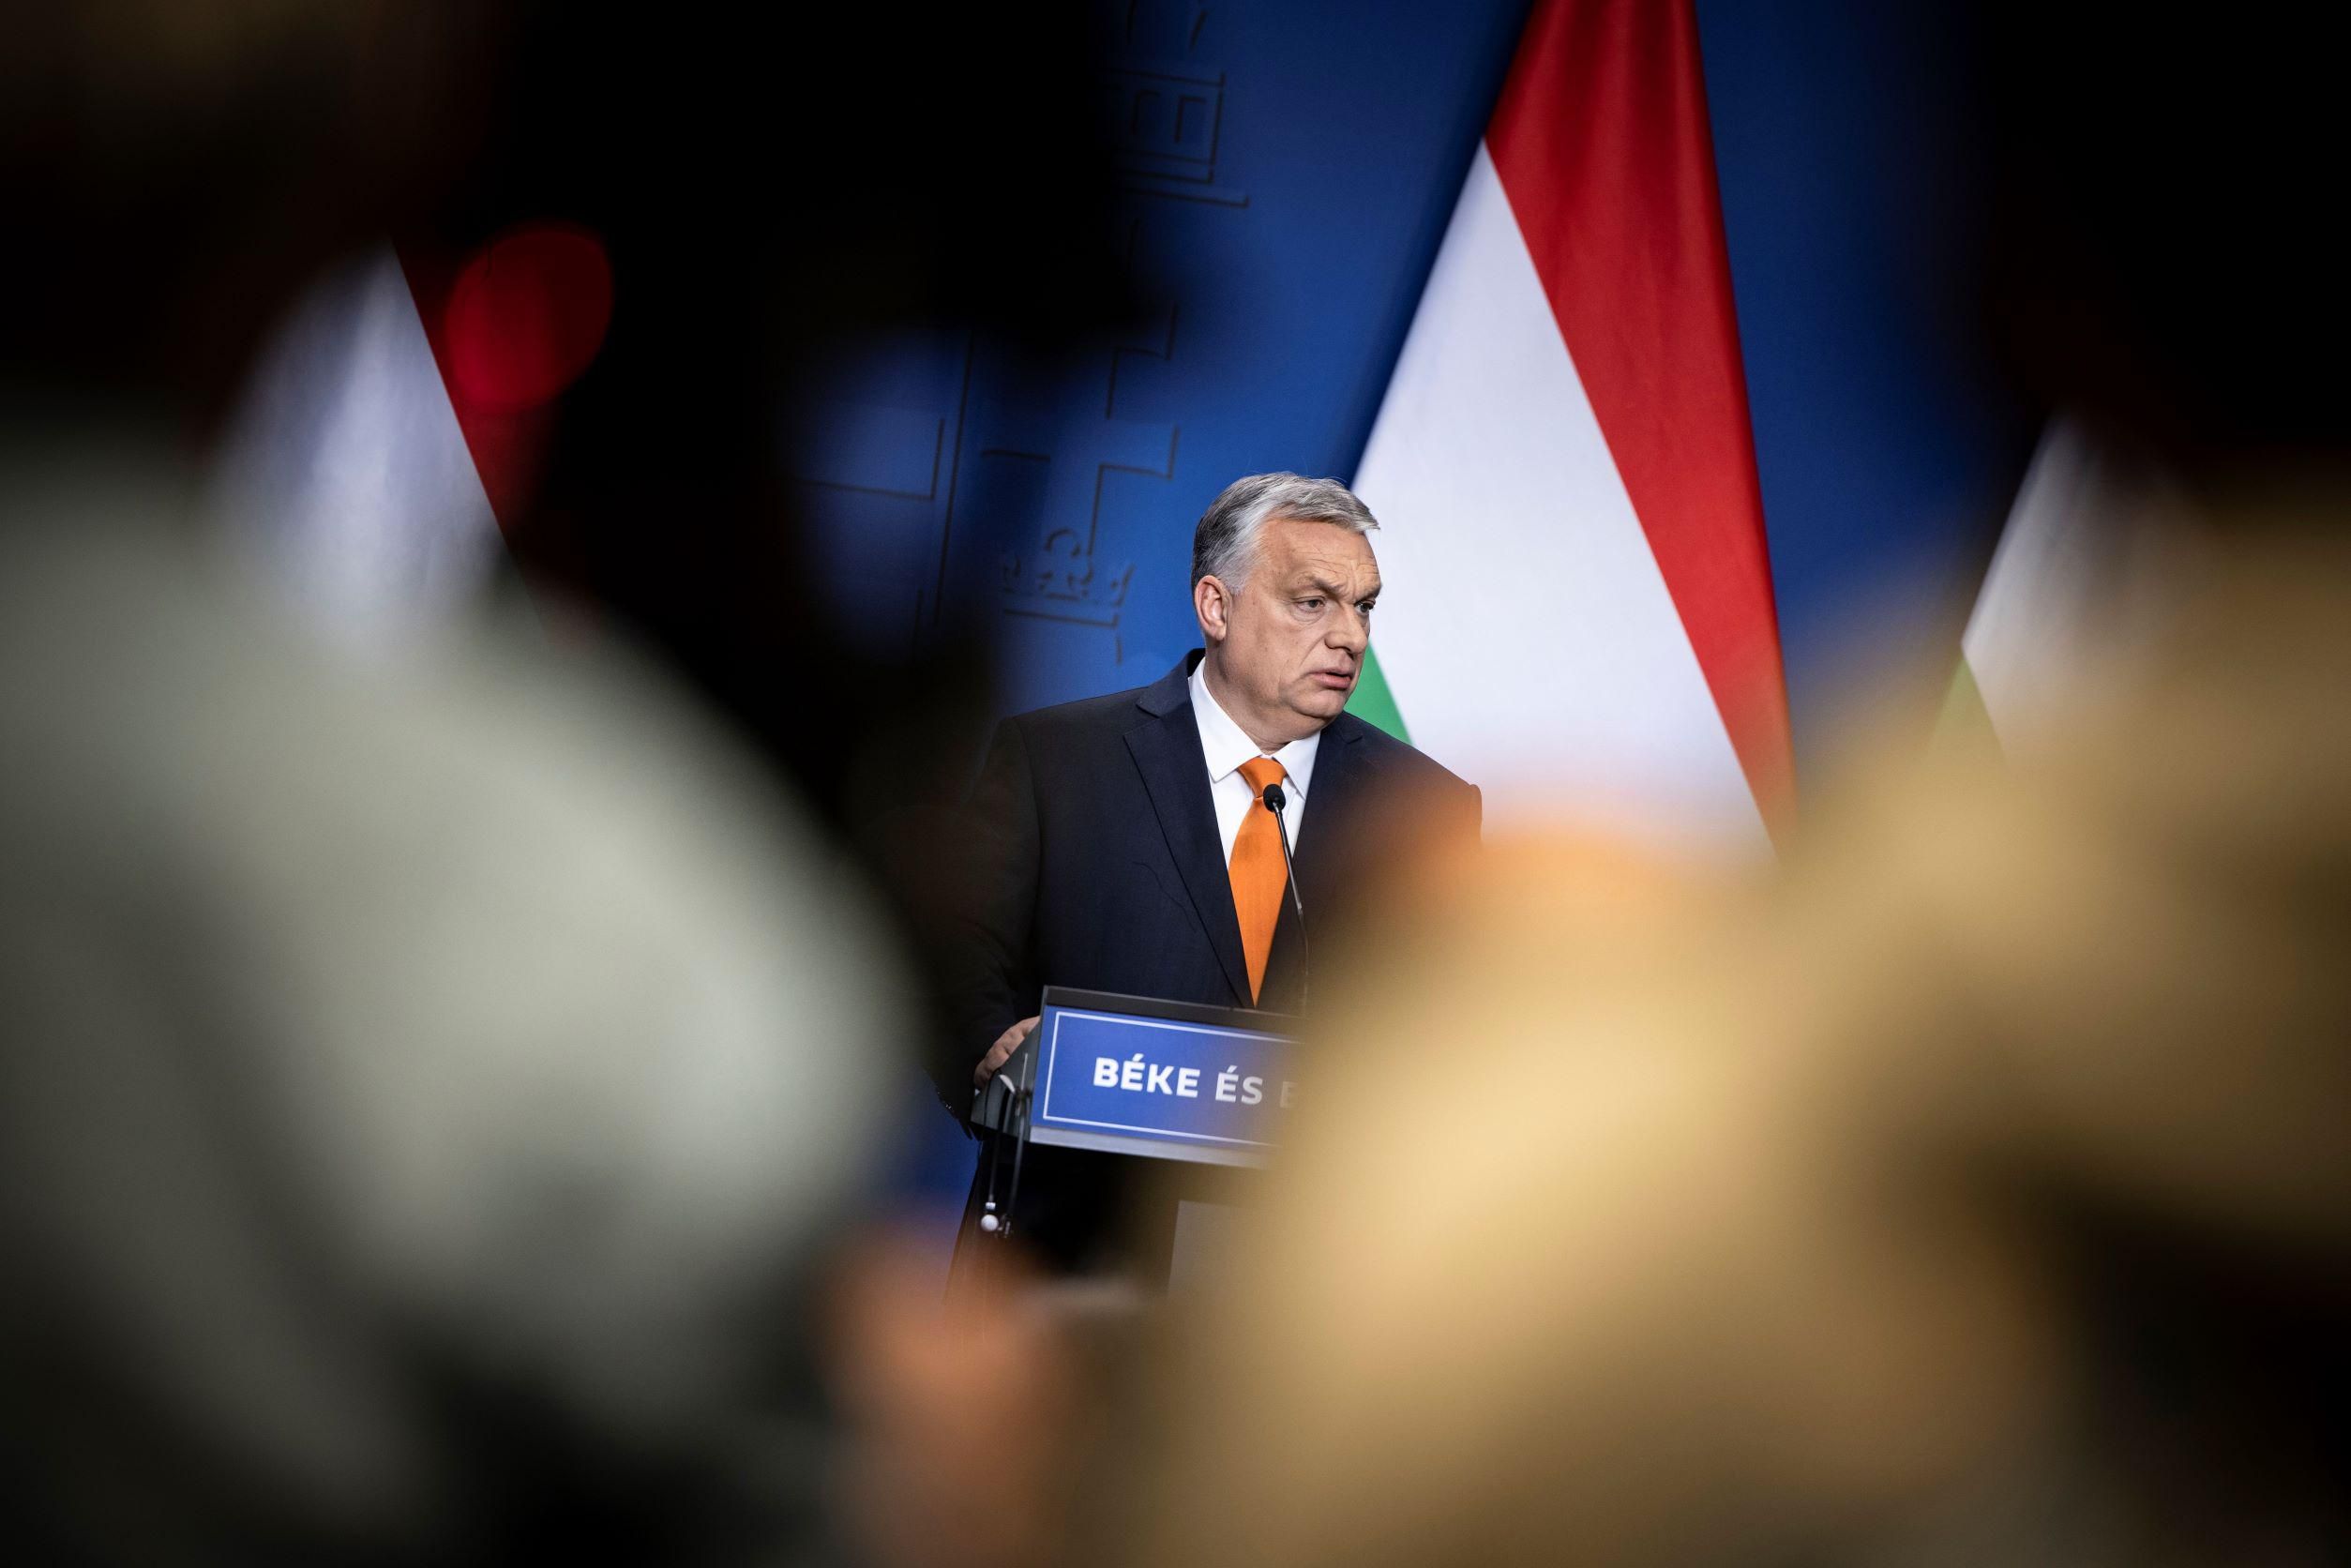 Orbán Viktor sajtótájékoztatója, Paks II., orosz gáz, gazdasági kérdések